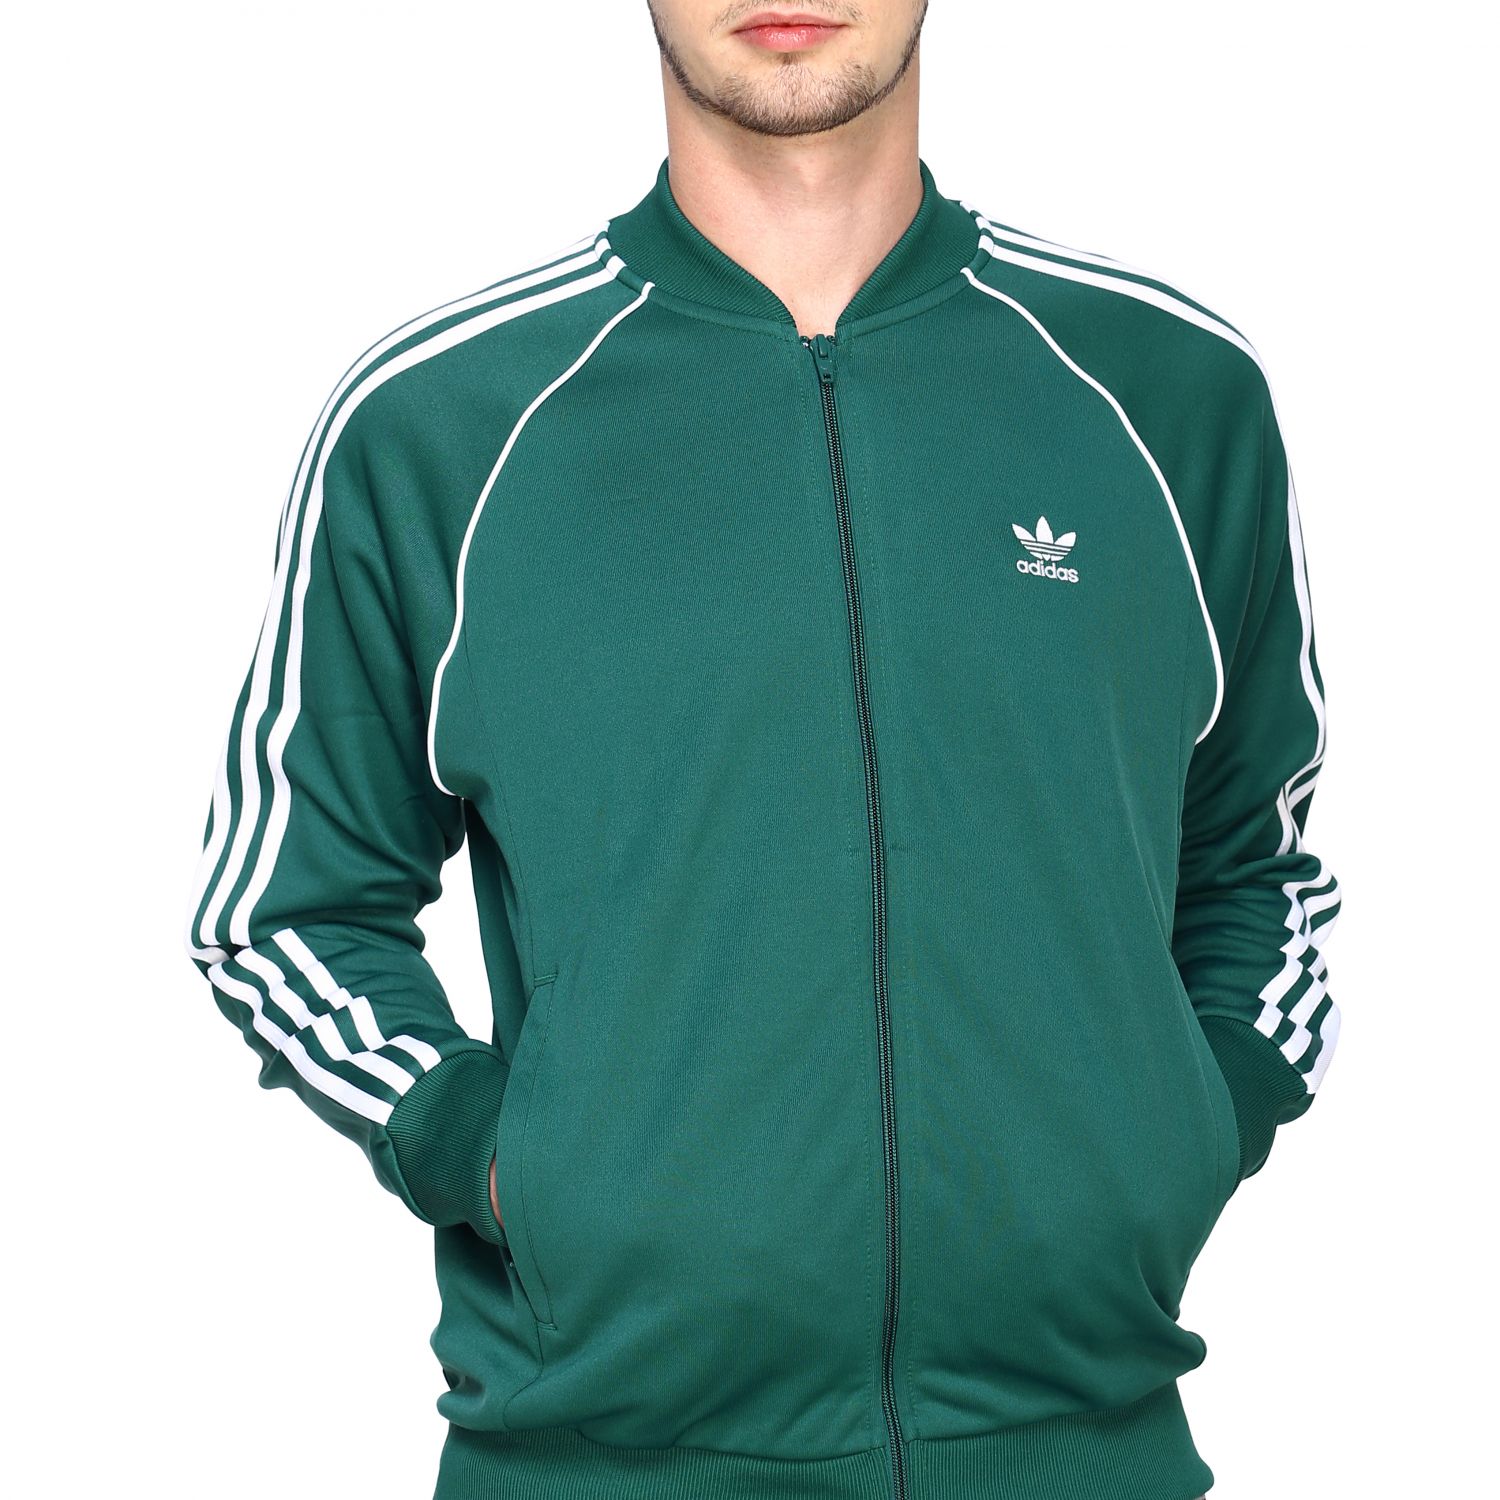 Outlet de Adidas Originals: Sudadera para Verde | Adidas Originals EJ9683 en línea en GIGLIO.COM